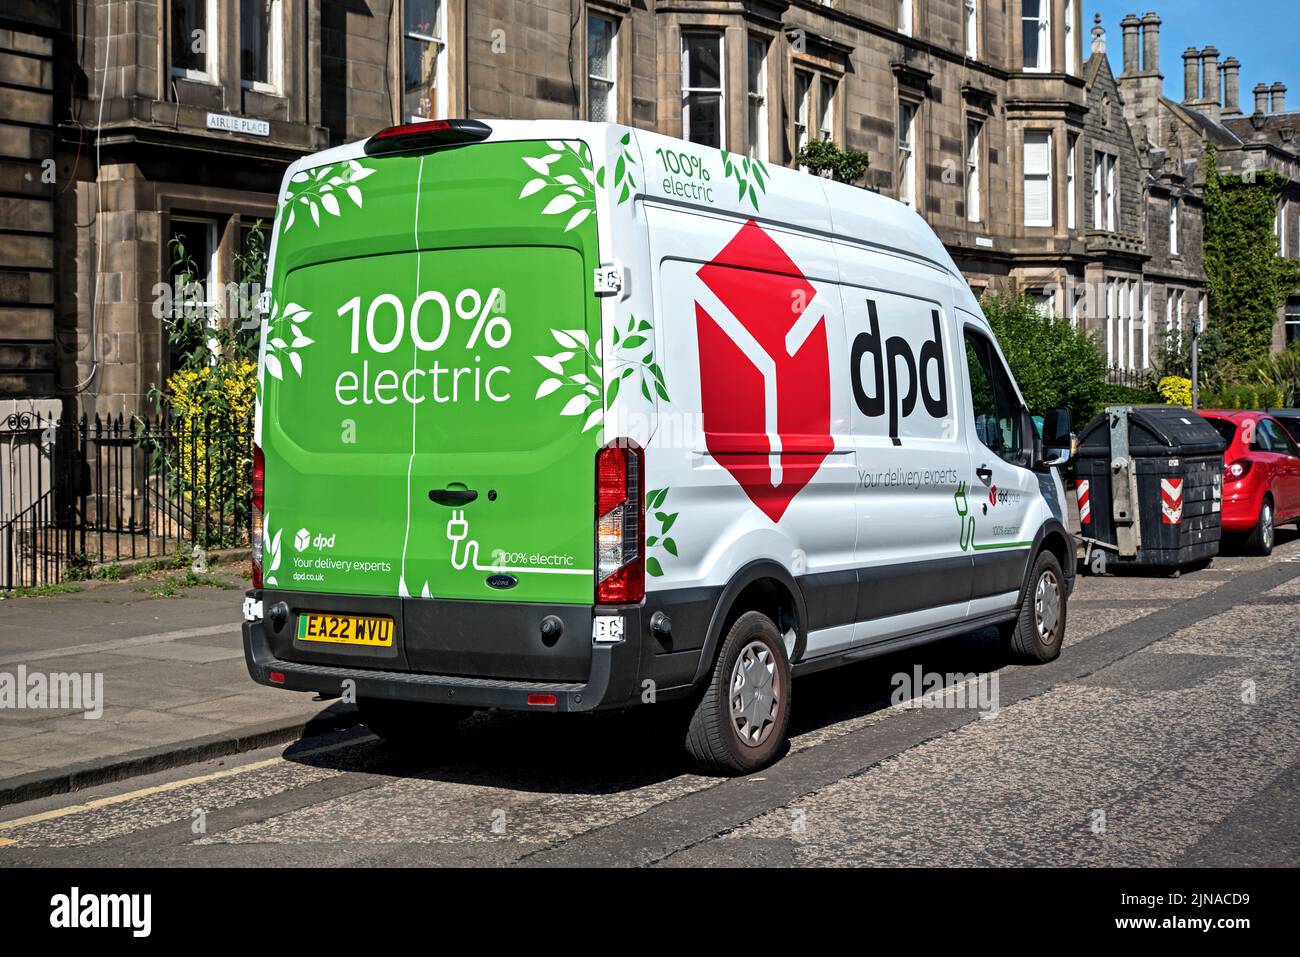 100% Electric dpd furgoneta de entrega estacionada en una calle en Edimburgo, Escocia, Reino Unido. Foto de stock